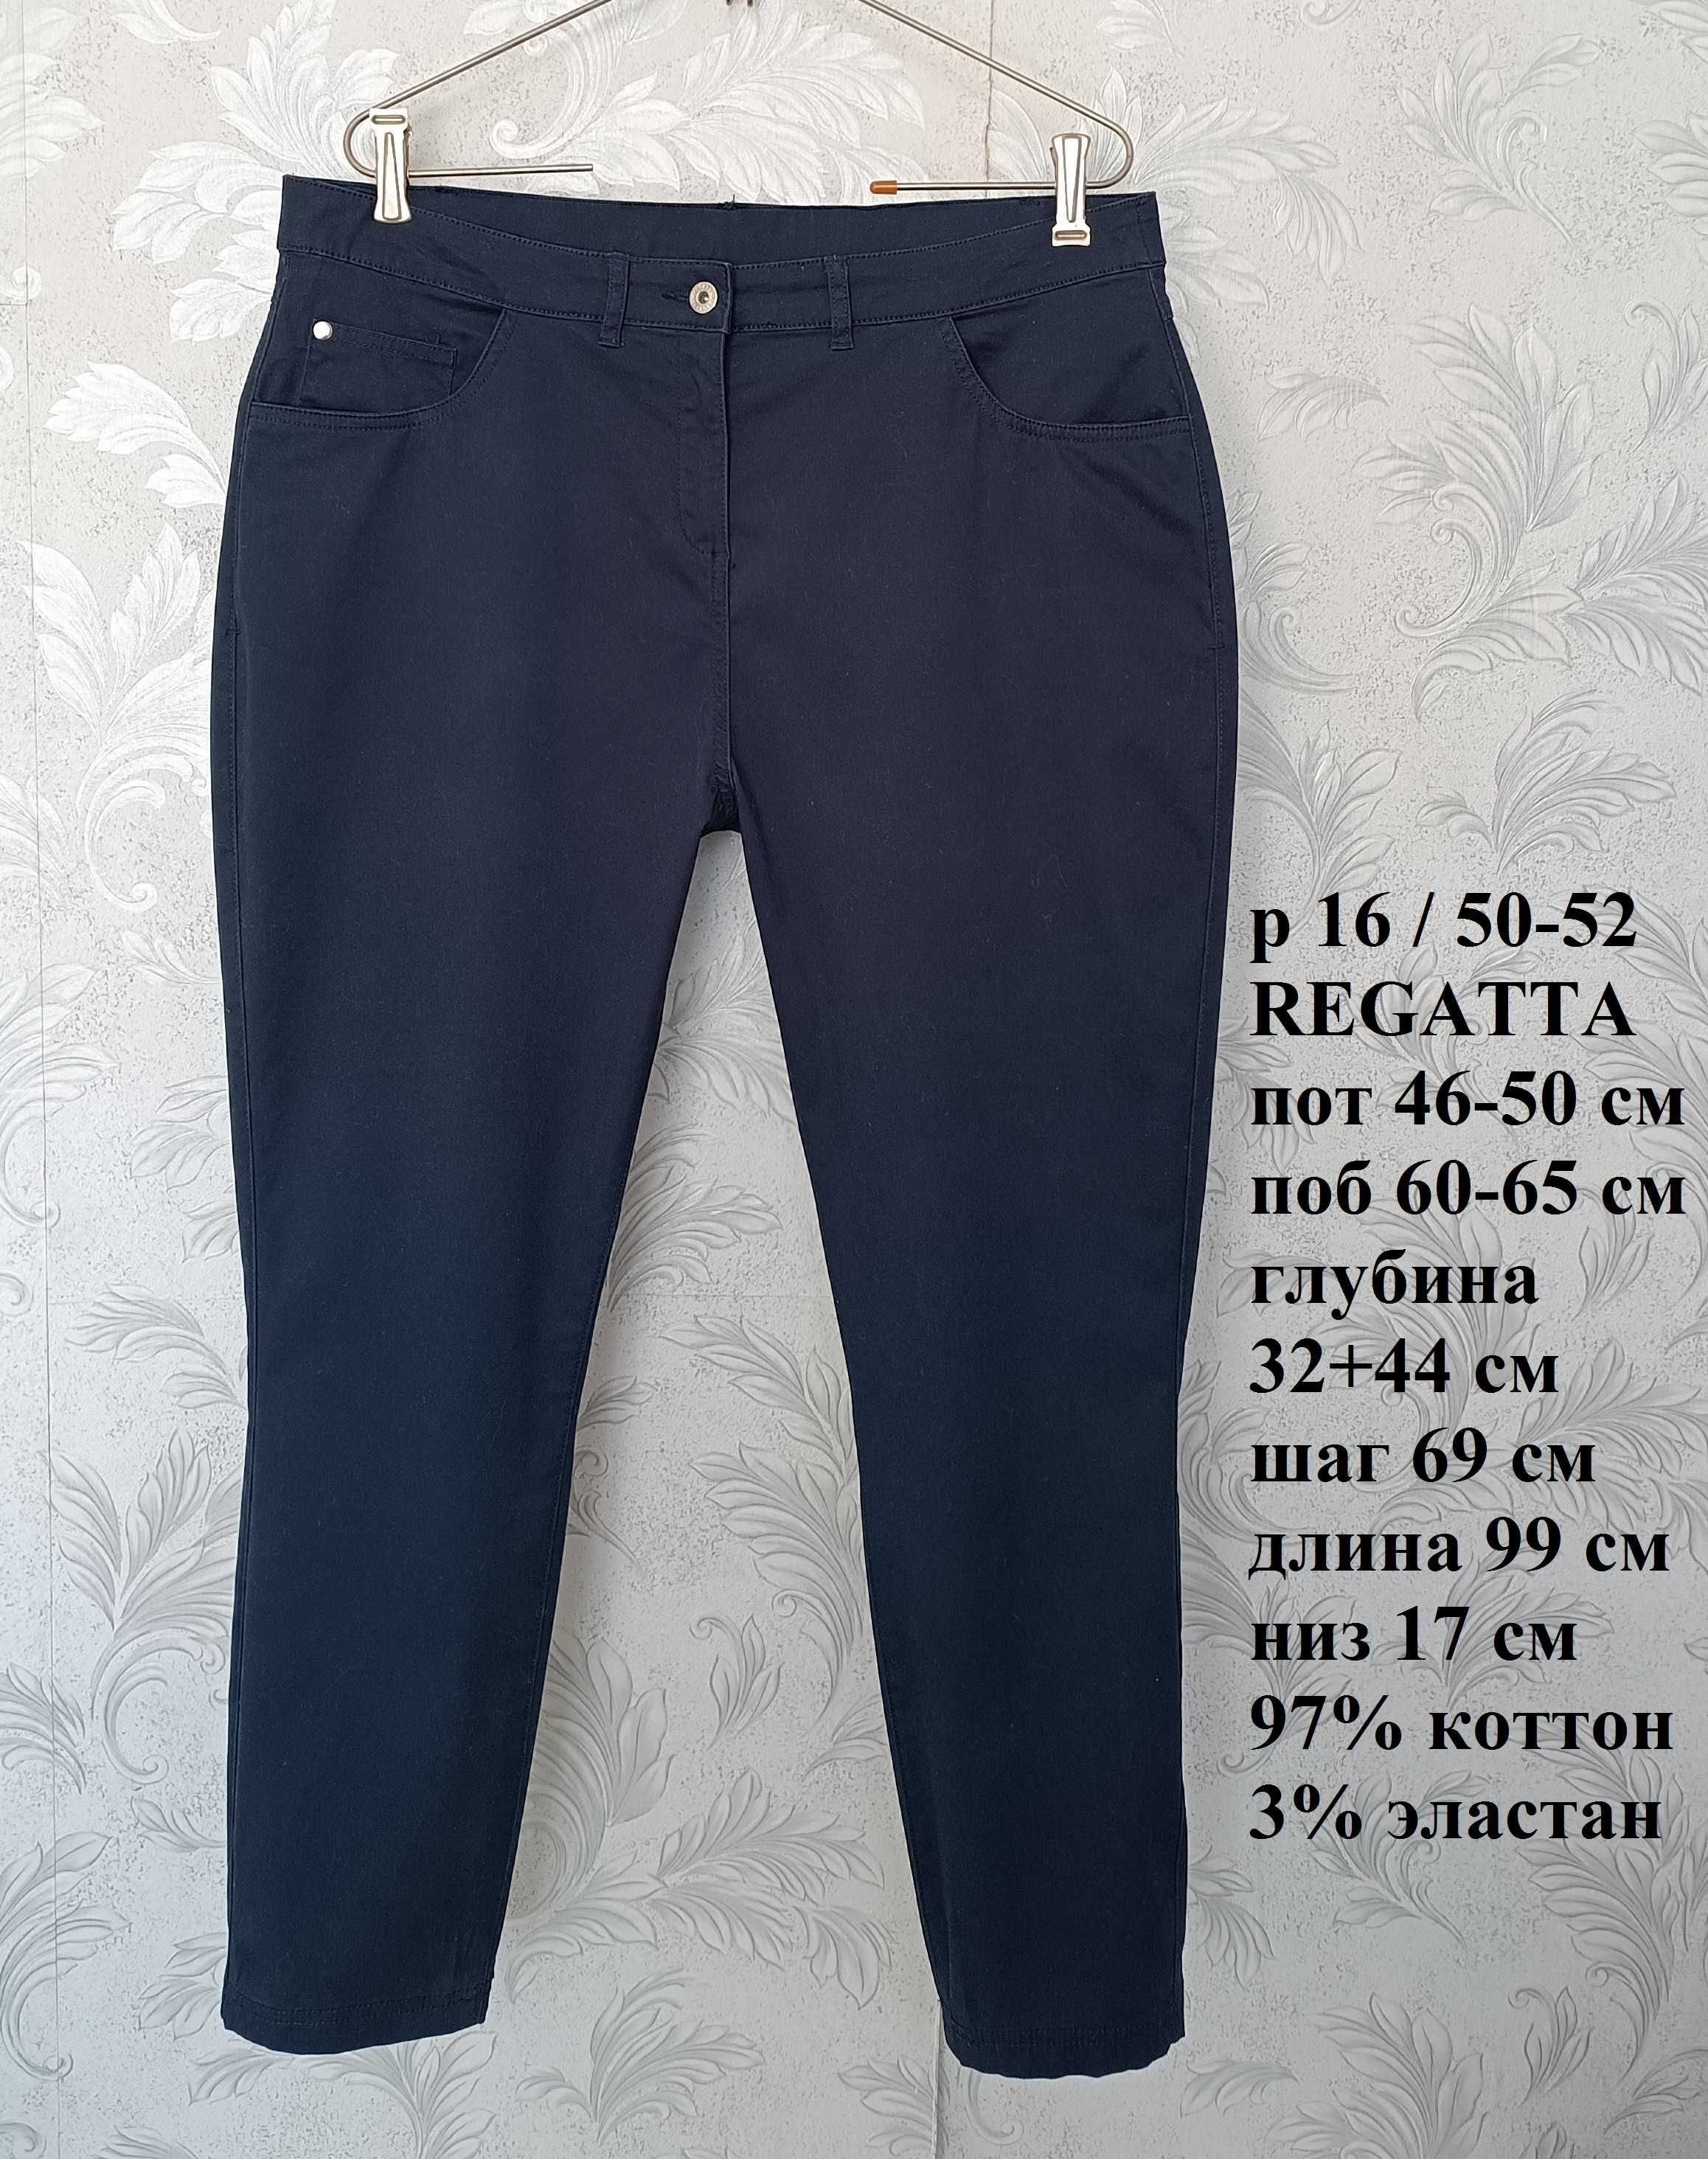 р 16 / 50-52 базові сині джинси штани скіні вузькі стрейчеві Regatta